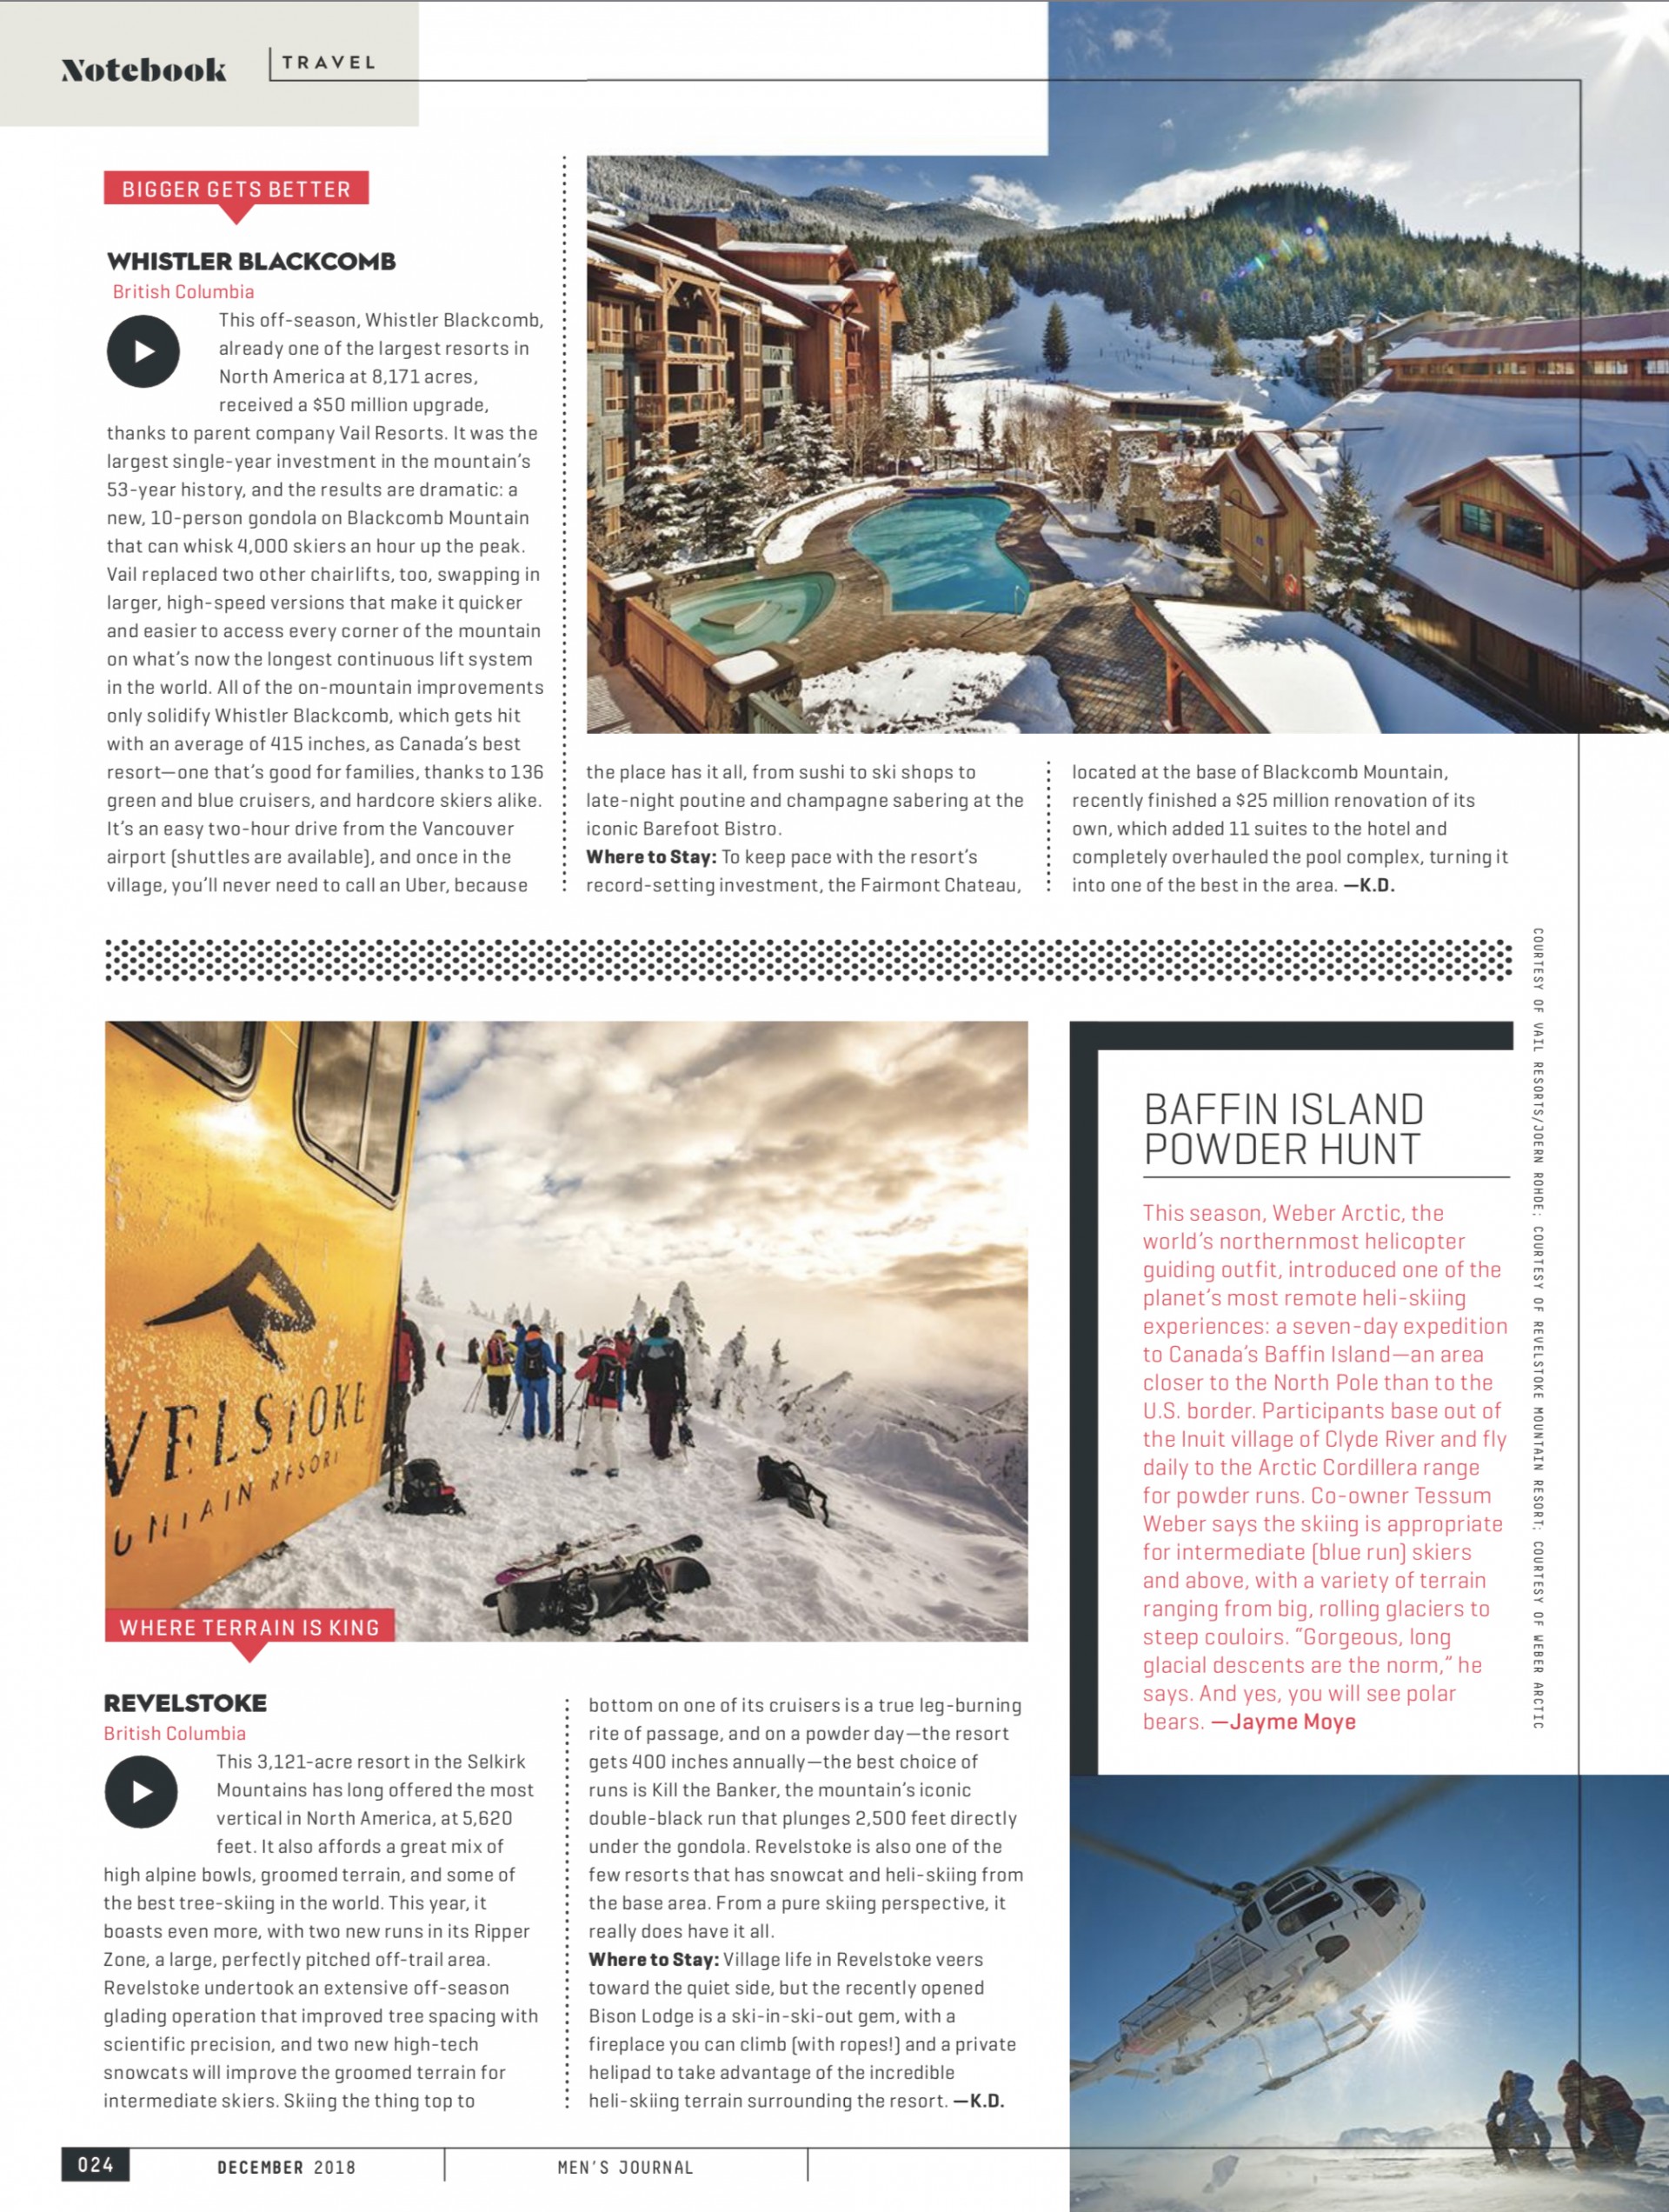 Weber Arctic Baffin Island Heliskiing featured in Men’s Journal